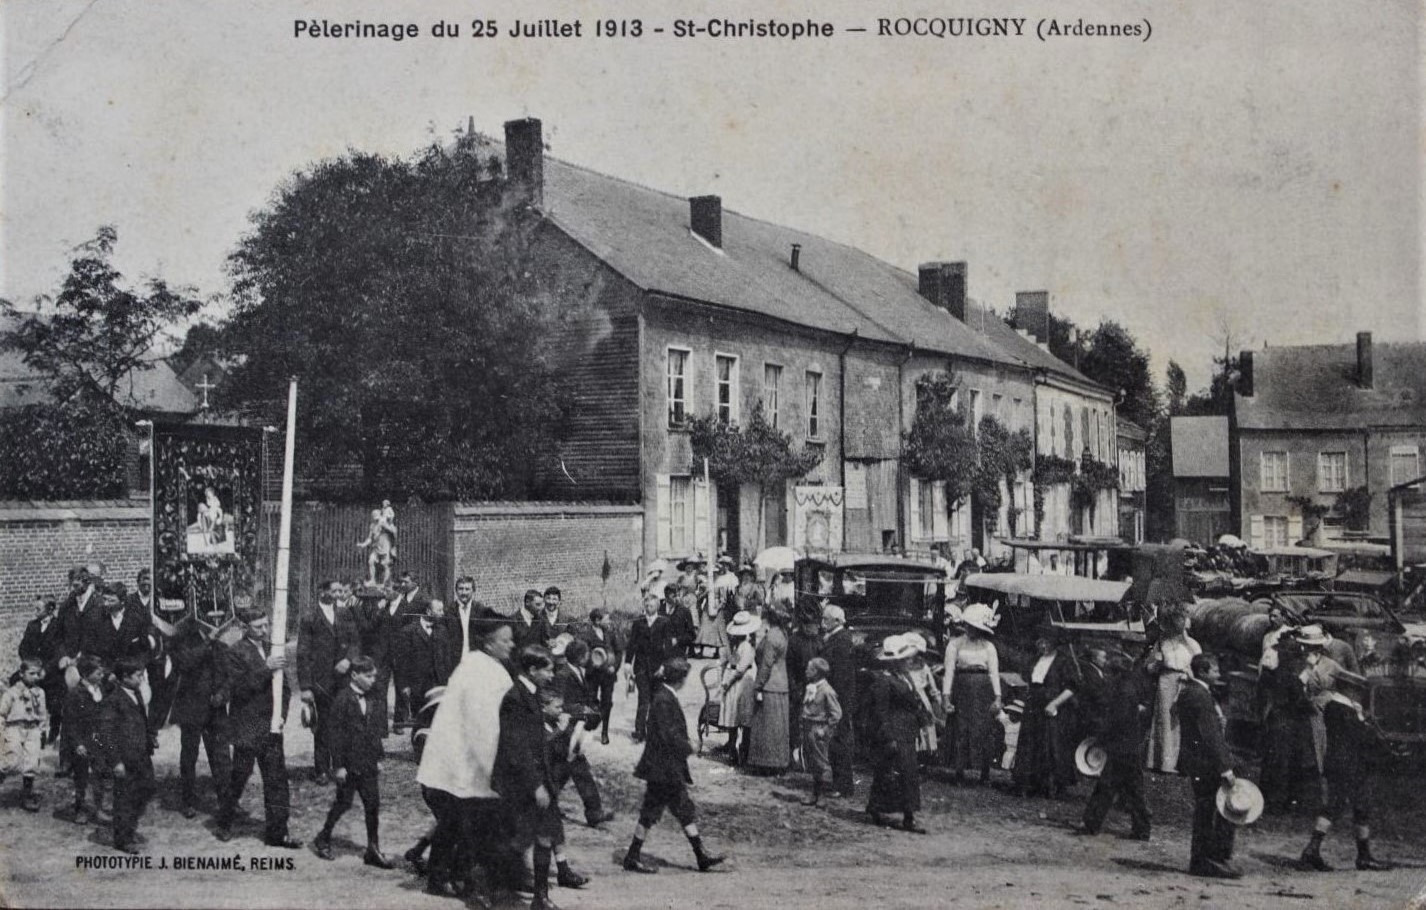 Un siècle après, la bannière de saint Christophe est conservée à l'église Saint-Christophe de Rocquigny (Ardennes). Lot de cartes postales anciennes en noir et blanc.